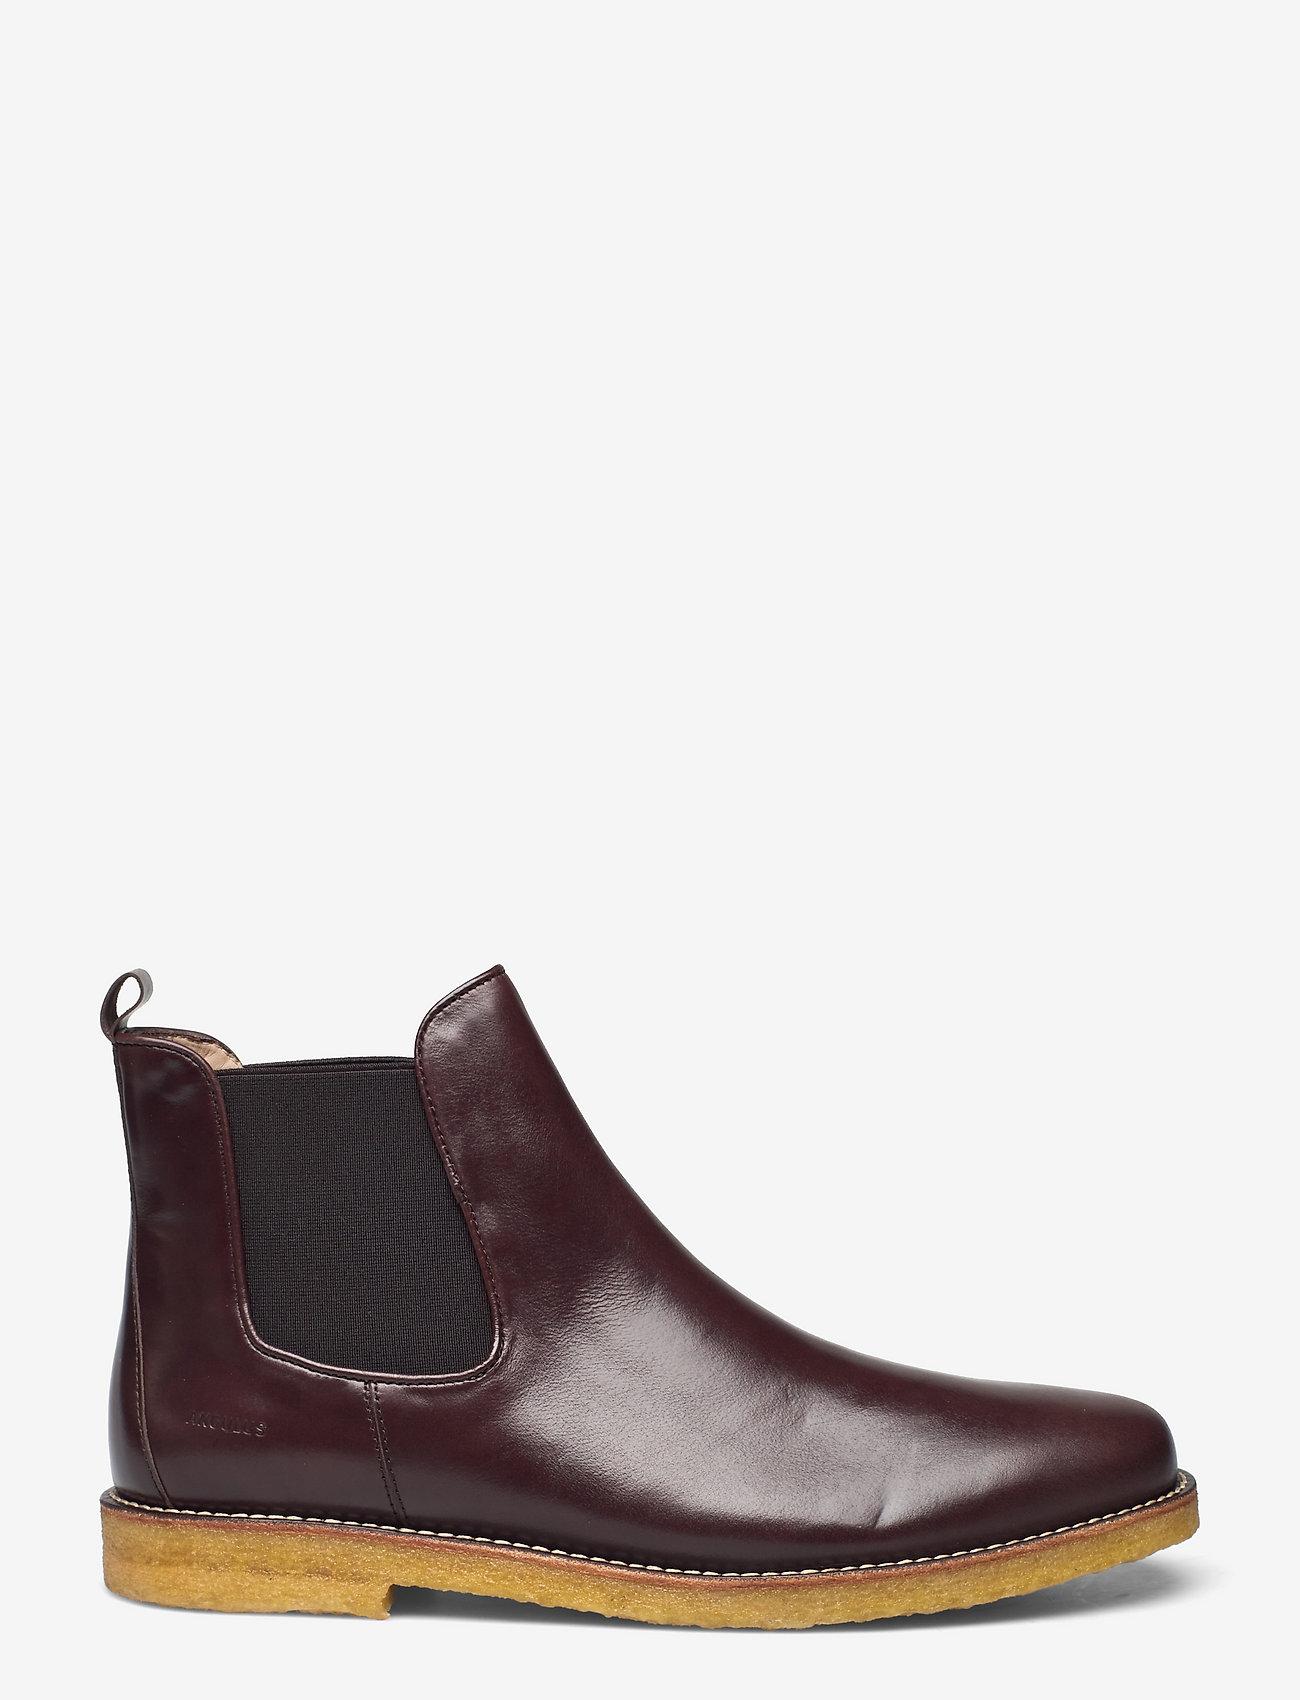 ANGULUS - Booties - flat - with elastic - chelsea boots - 1836/002 dark brown/dark brown - 1